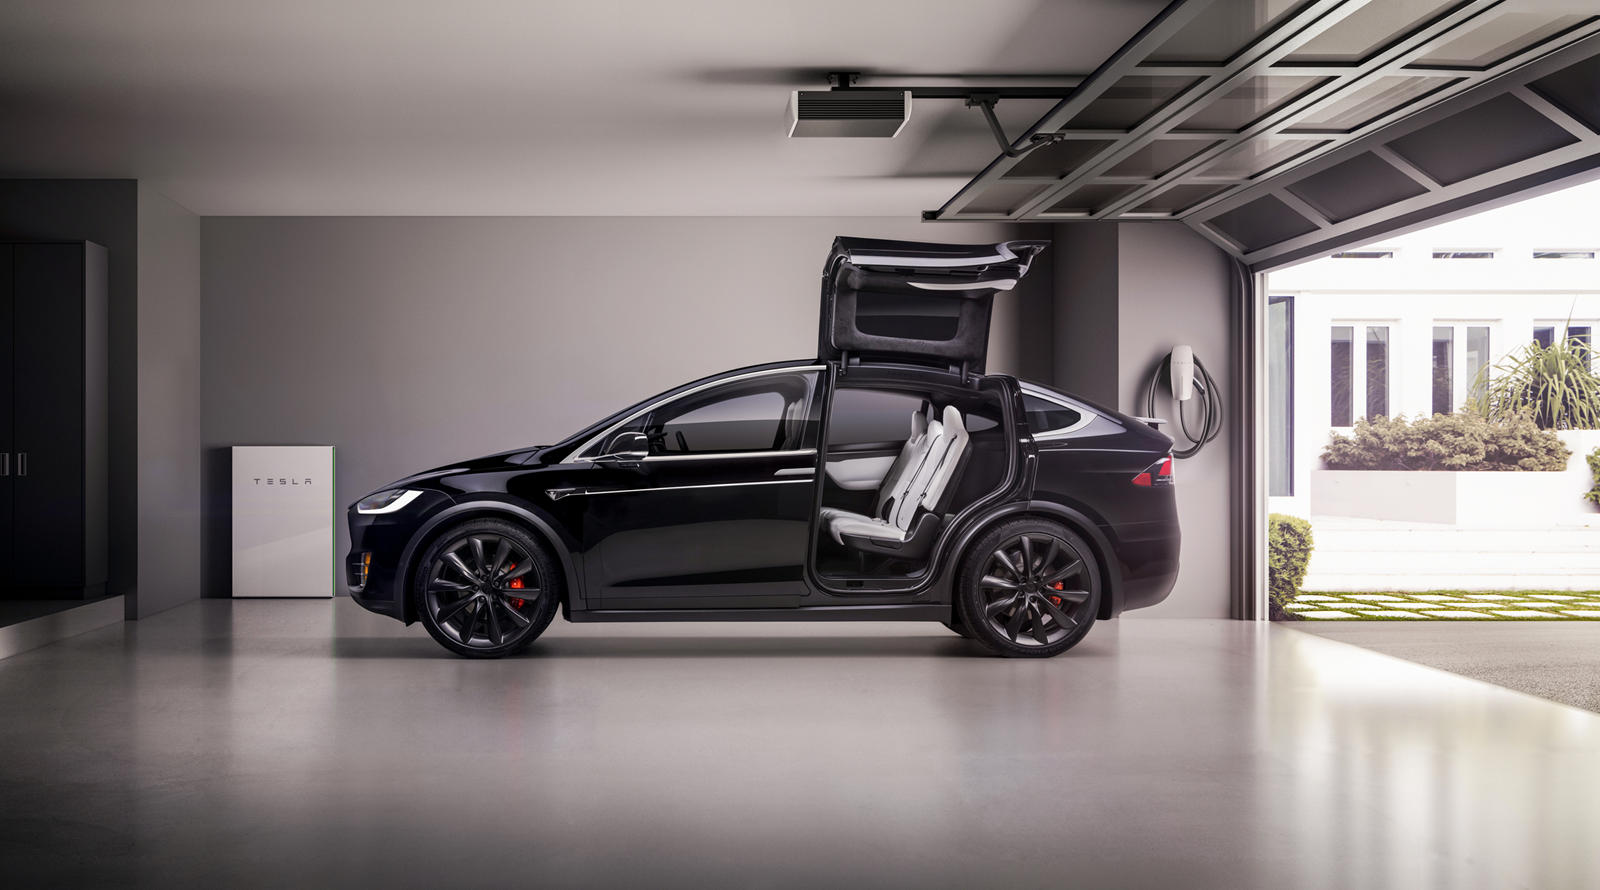 Недавно представленный Tesla Model S Plaid с его странным и, возможно, незаконным рулевым колесом стал главной темой новостей в последнее время. Но в то же время калифорнийский автопроизводитель очень тихо приступил к новому секретному проекту в Теха